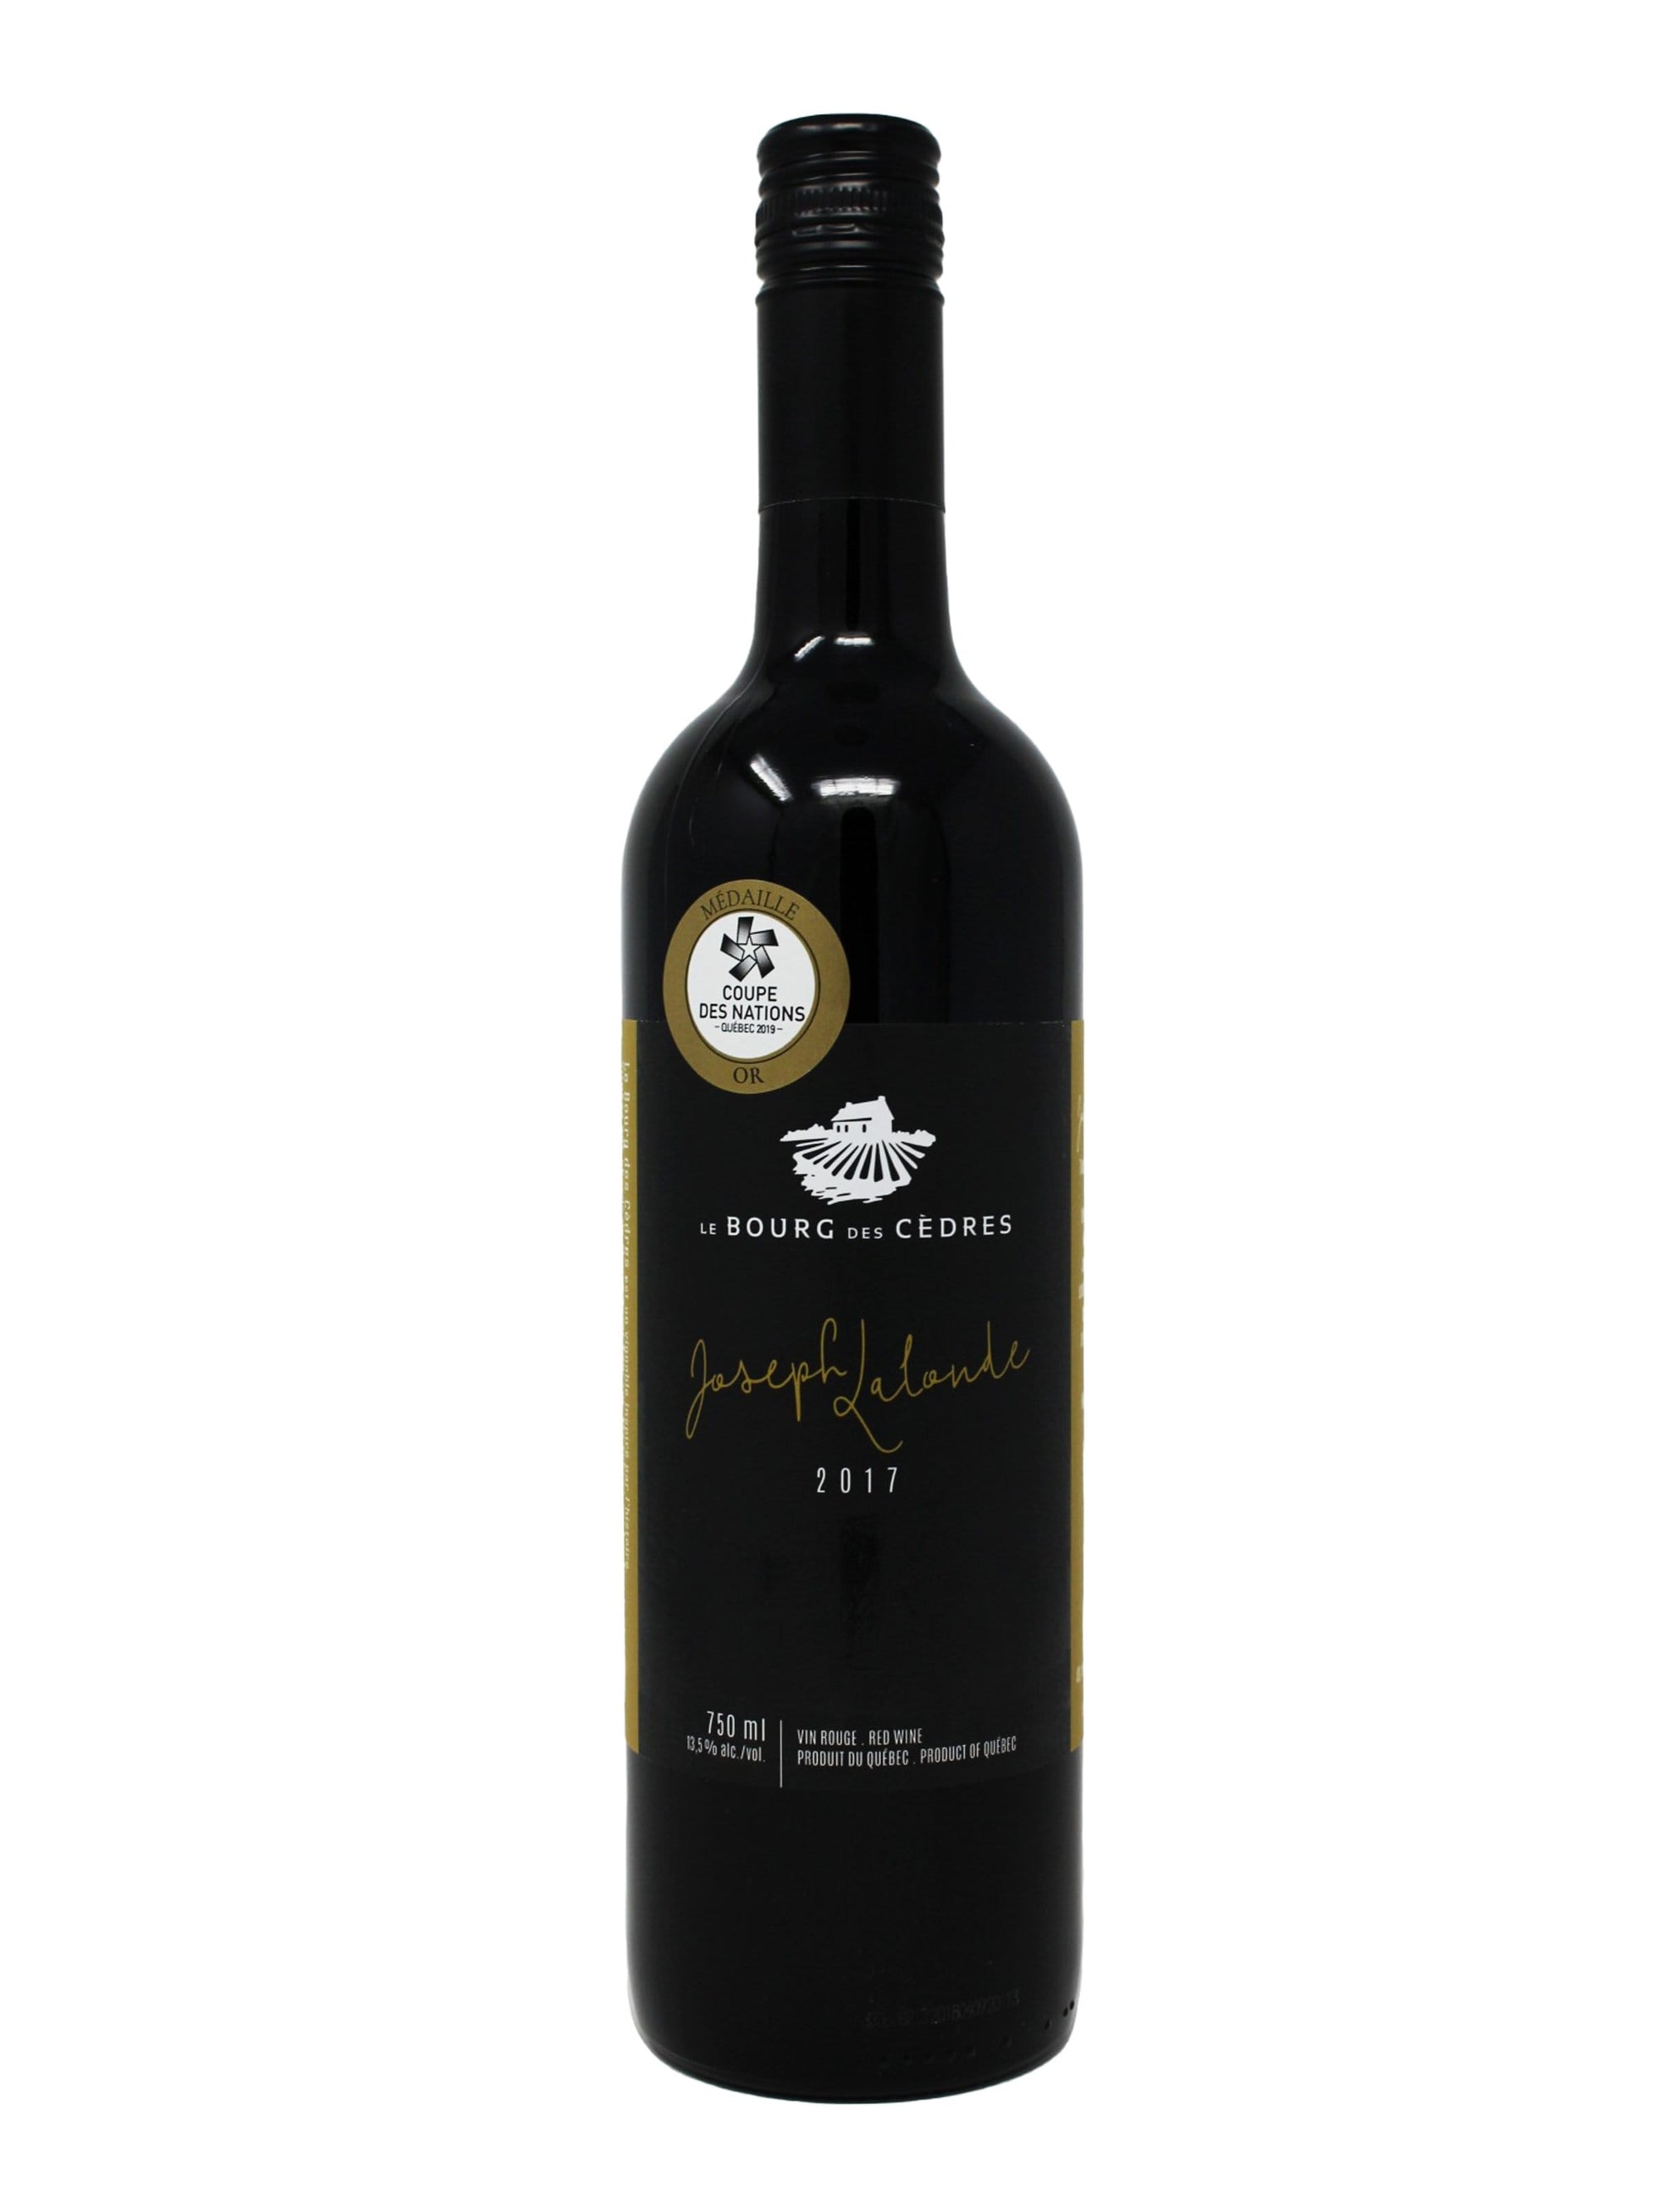 Bourg des Cèdres vin Joseph Lalonde 2017 - Vin rouge du Vignoble Le Bourg des Cèdres